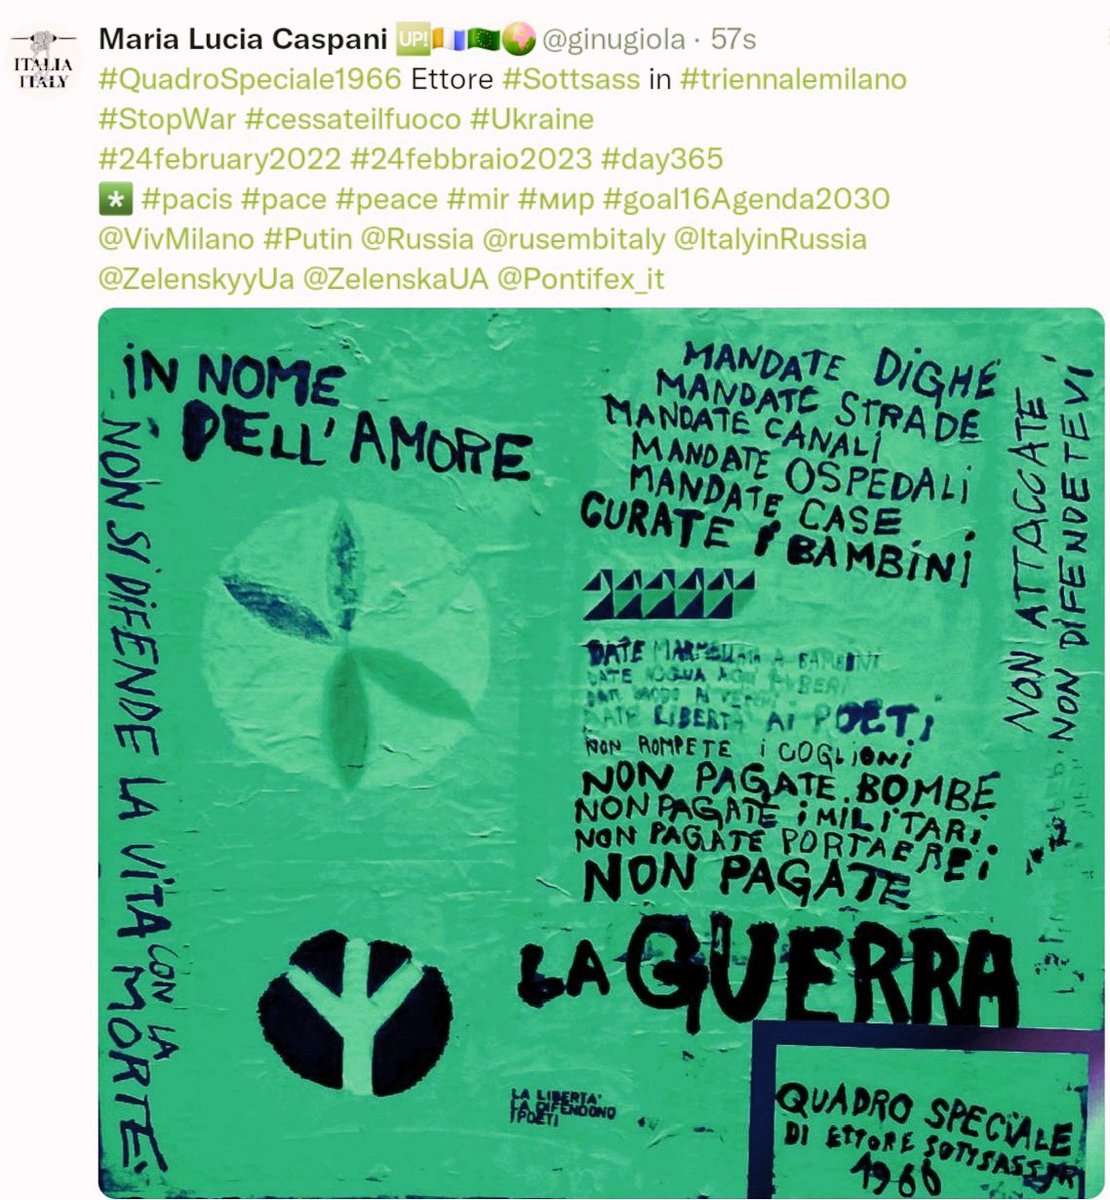 #QuadroSpeciale1966 Ettore #Sottsass 
già in mostra #triennalemi 
#StopWar #cessateilfuoco
#21May #21maggio2024
*️⃣ #pacis #mir #paz #paix
#goal16 #Agenda2030 @UN
#PremioPaceCentroArteSeverMI 
#Culture4Peace #SoloPace 
@VivMilano @marianninapelle @Cica7981 @LaFrauMi1 @notizioso